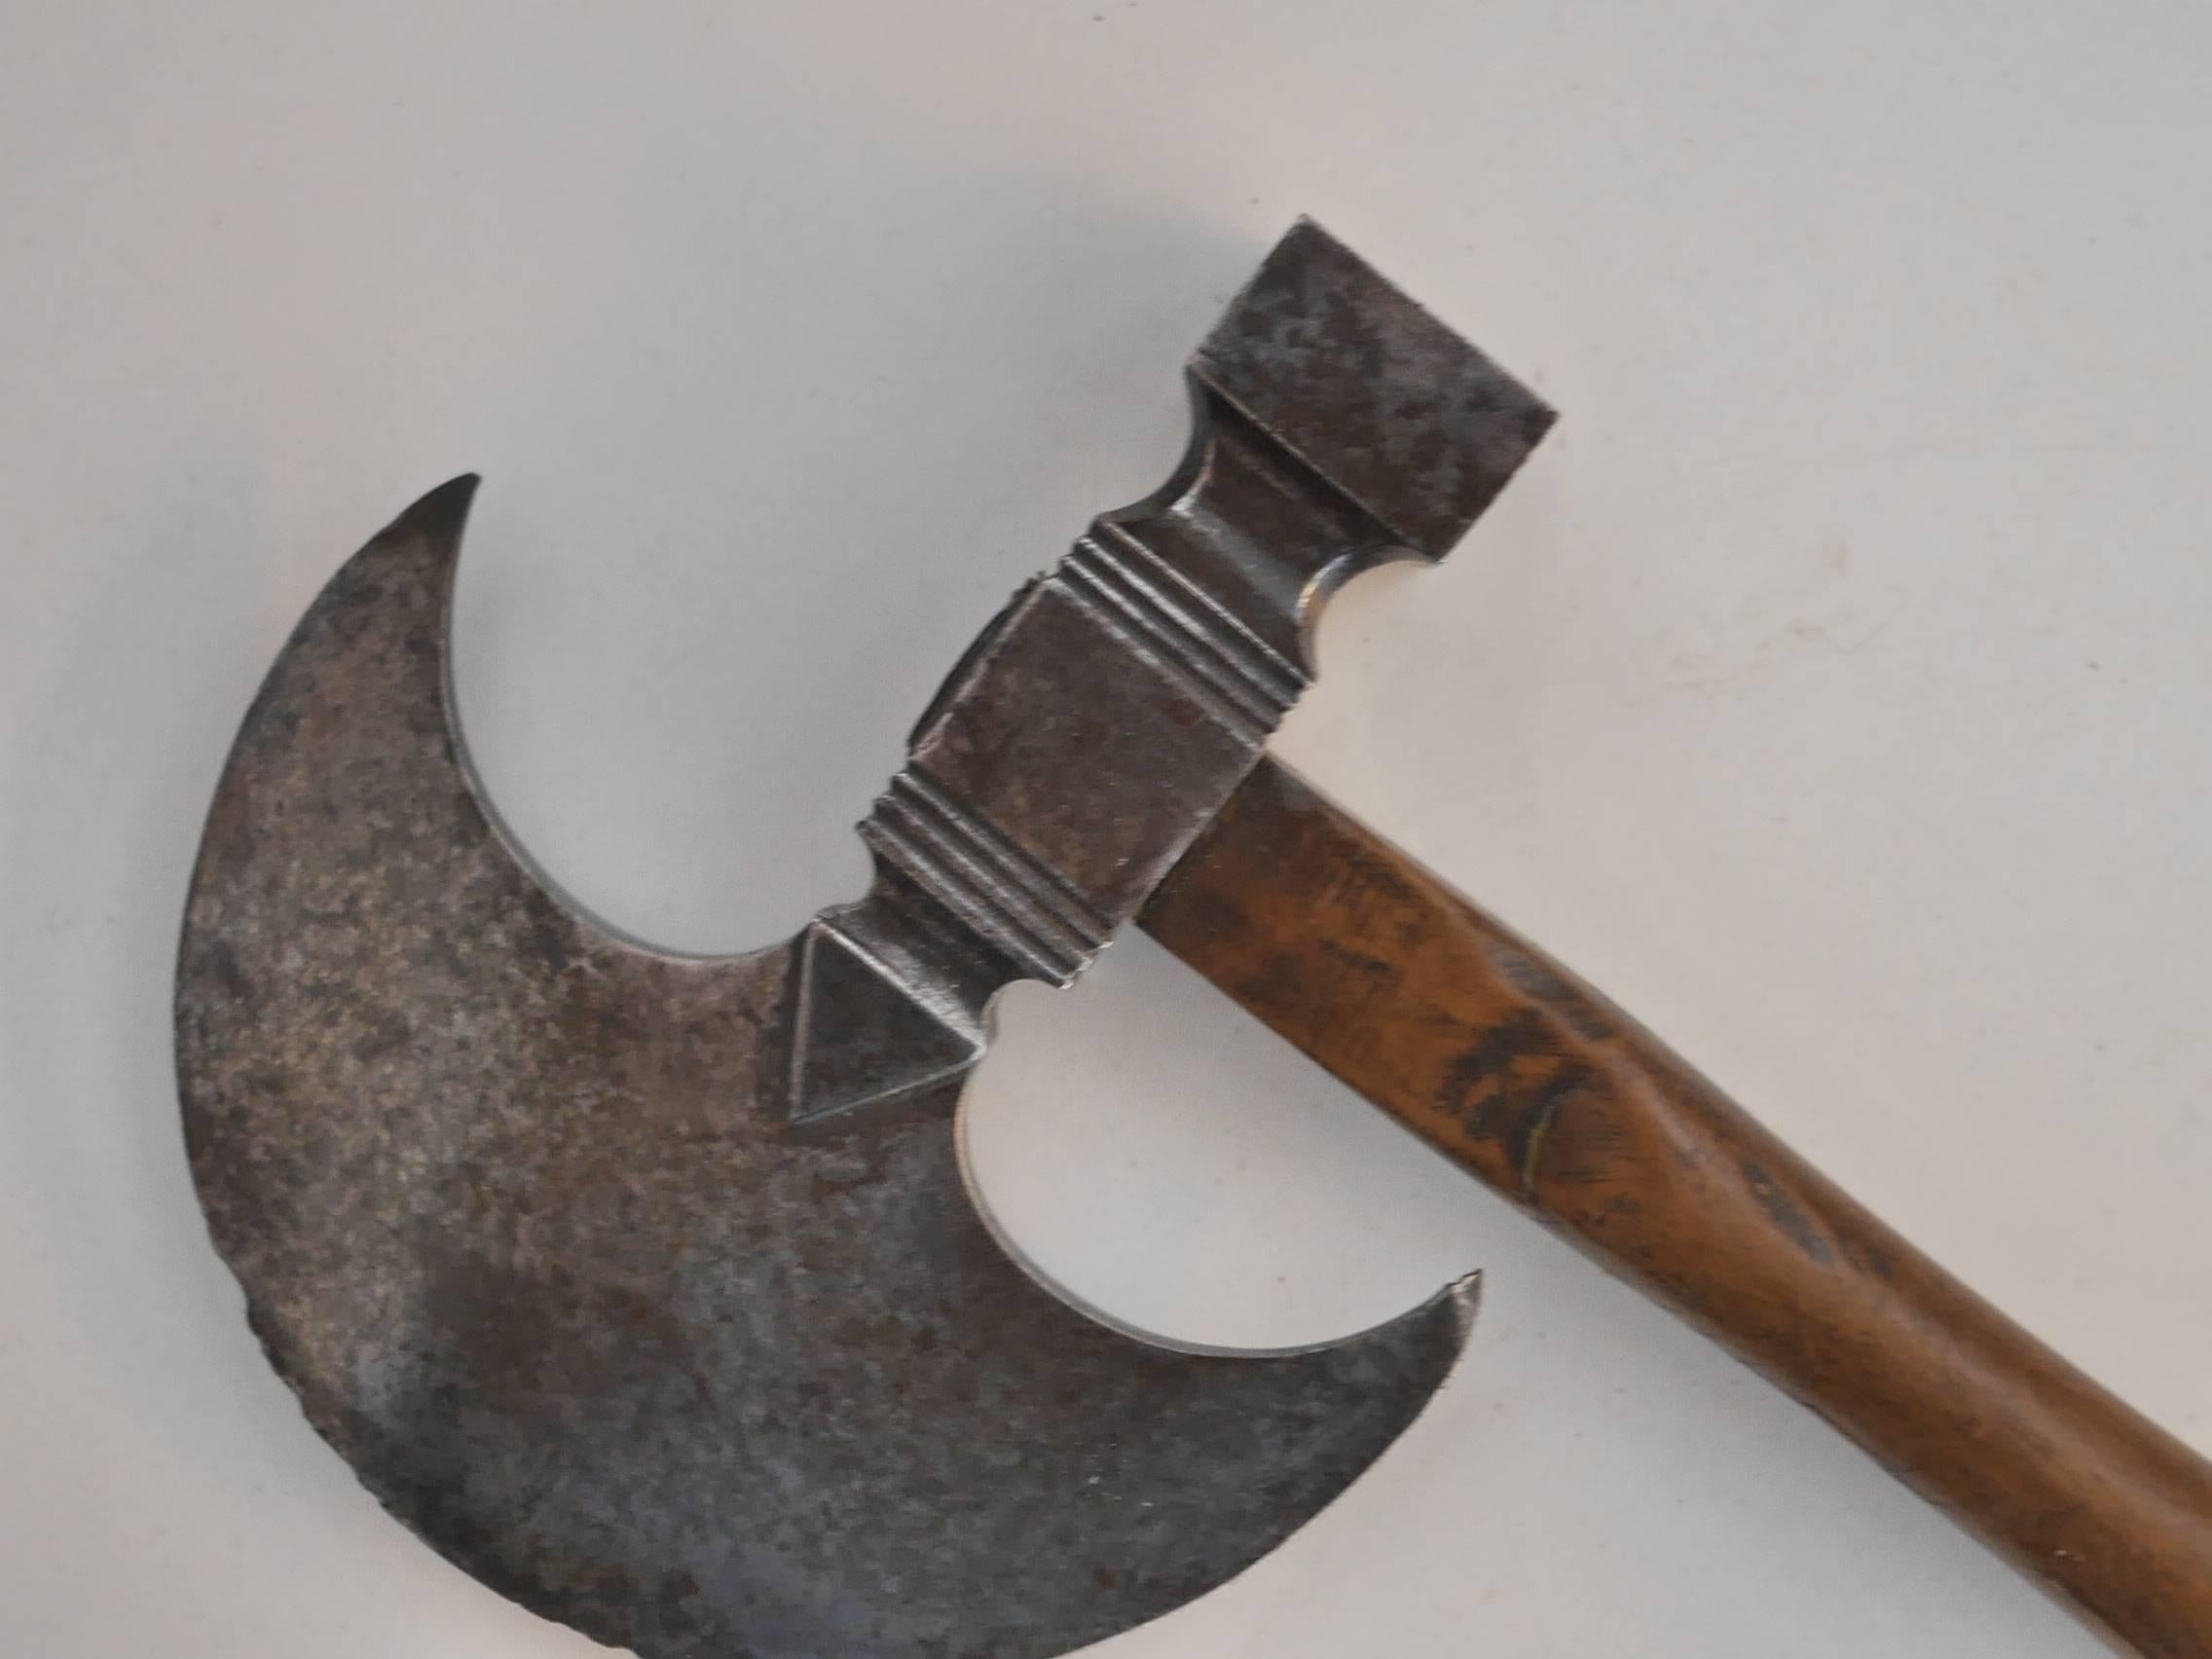 18th century axe